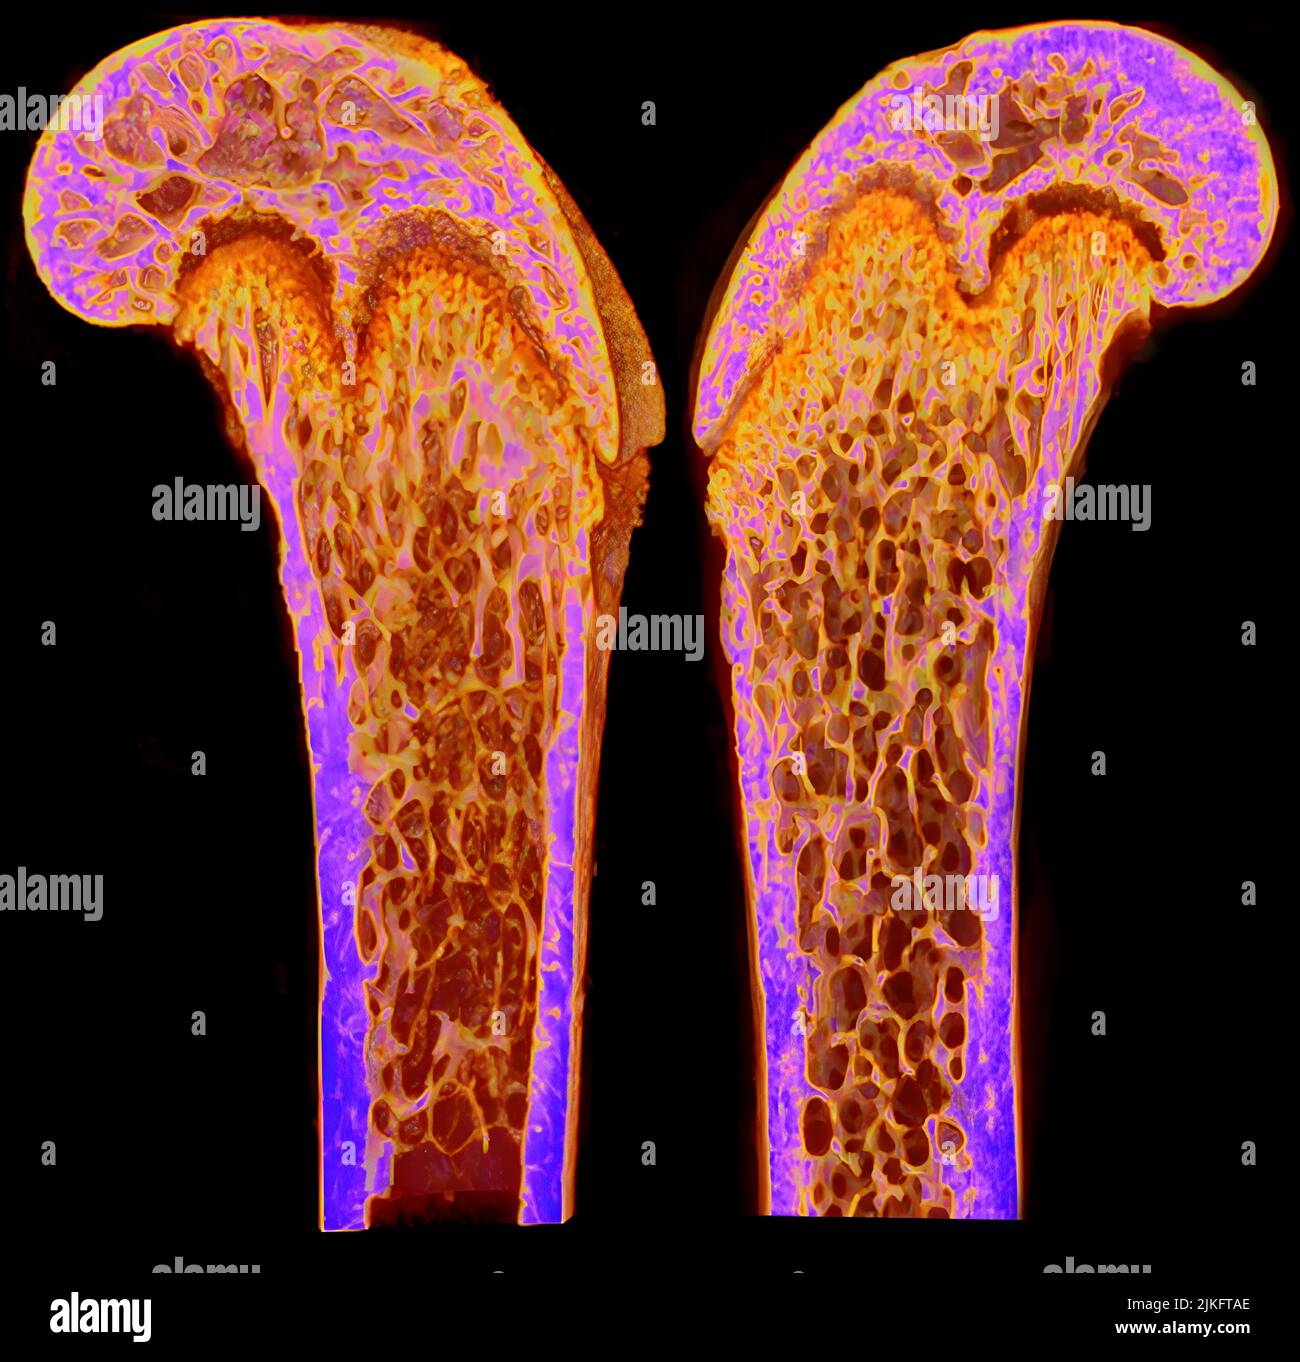 Dieses Bild zeigt mikrocomputergestützte Tomograophie (Mikro-CT) Rekonstruktionen von Femuren des 9 Wochen alten Mannes von Dlx3+/+ (linke Hälfte) und Dlx3Prx1-CKO (rechte Hälfte) Mäusen. Die Bilder sind sagittale Abschnitte mit mittleren Knochen und Farbverlauf, der der Mineraldichte des Knochens entspricht. Stockfoto